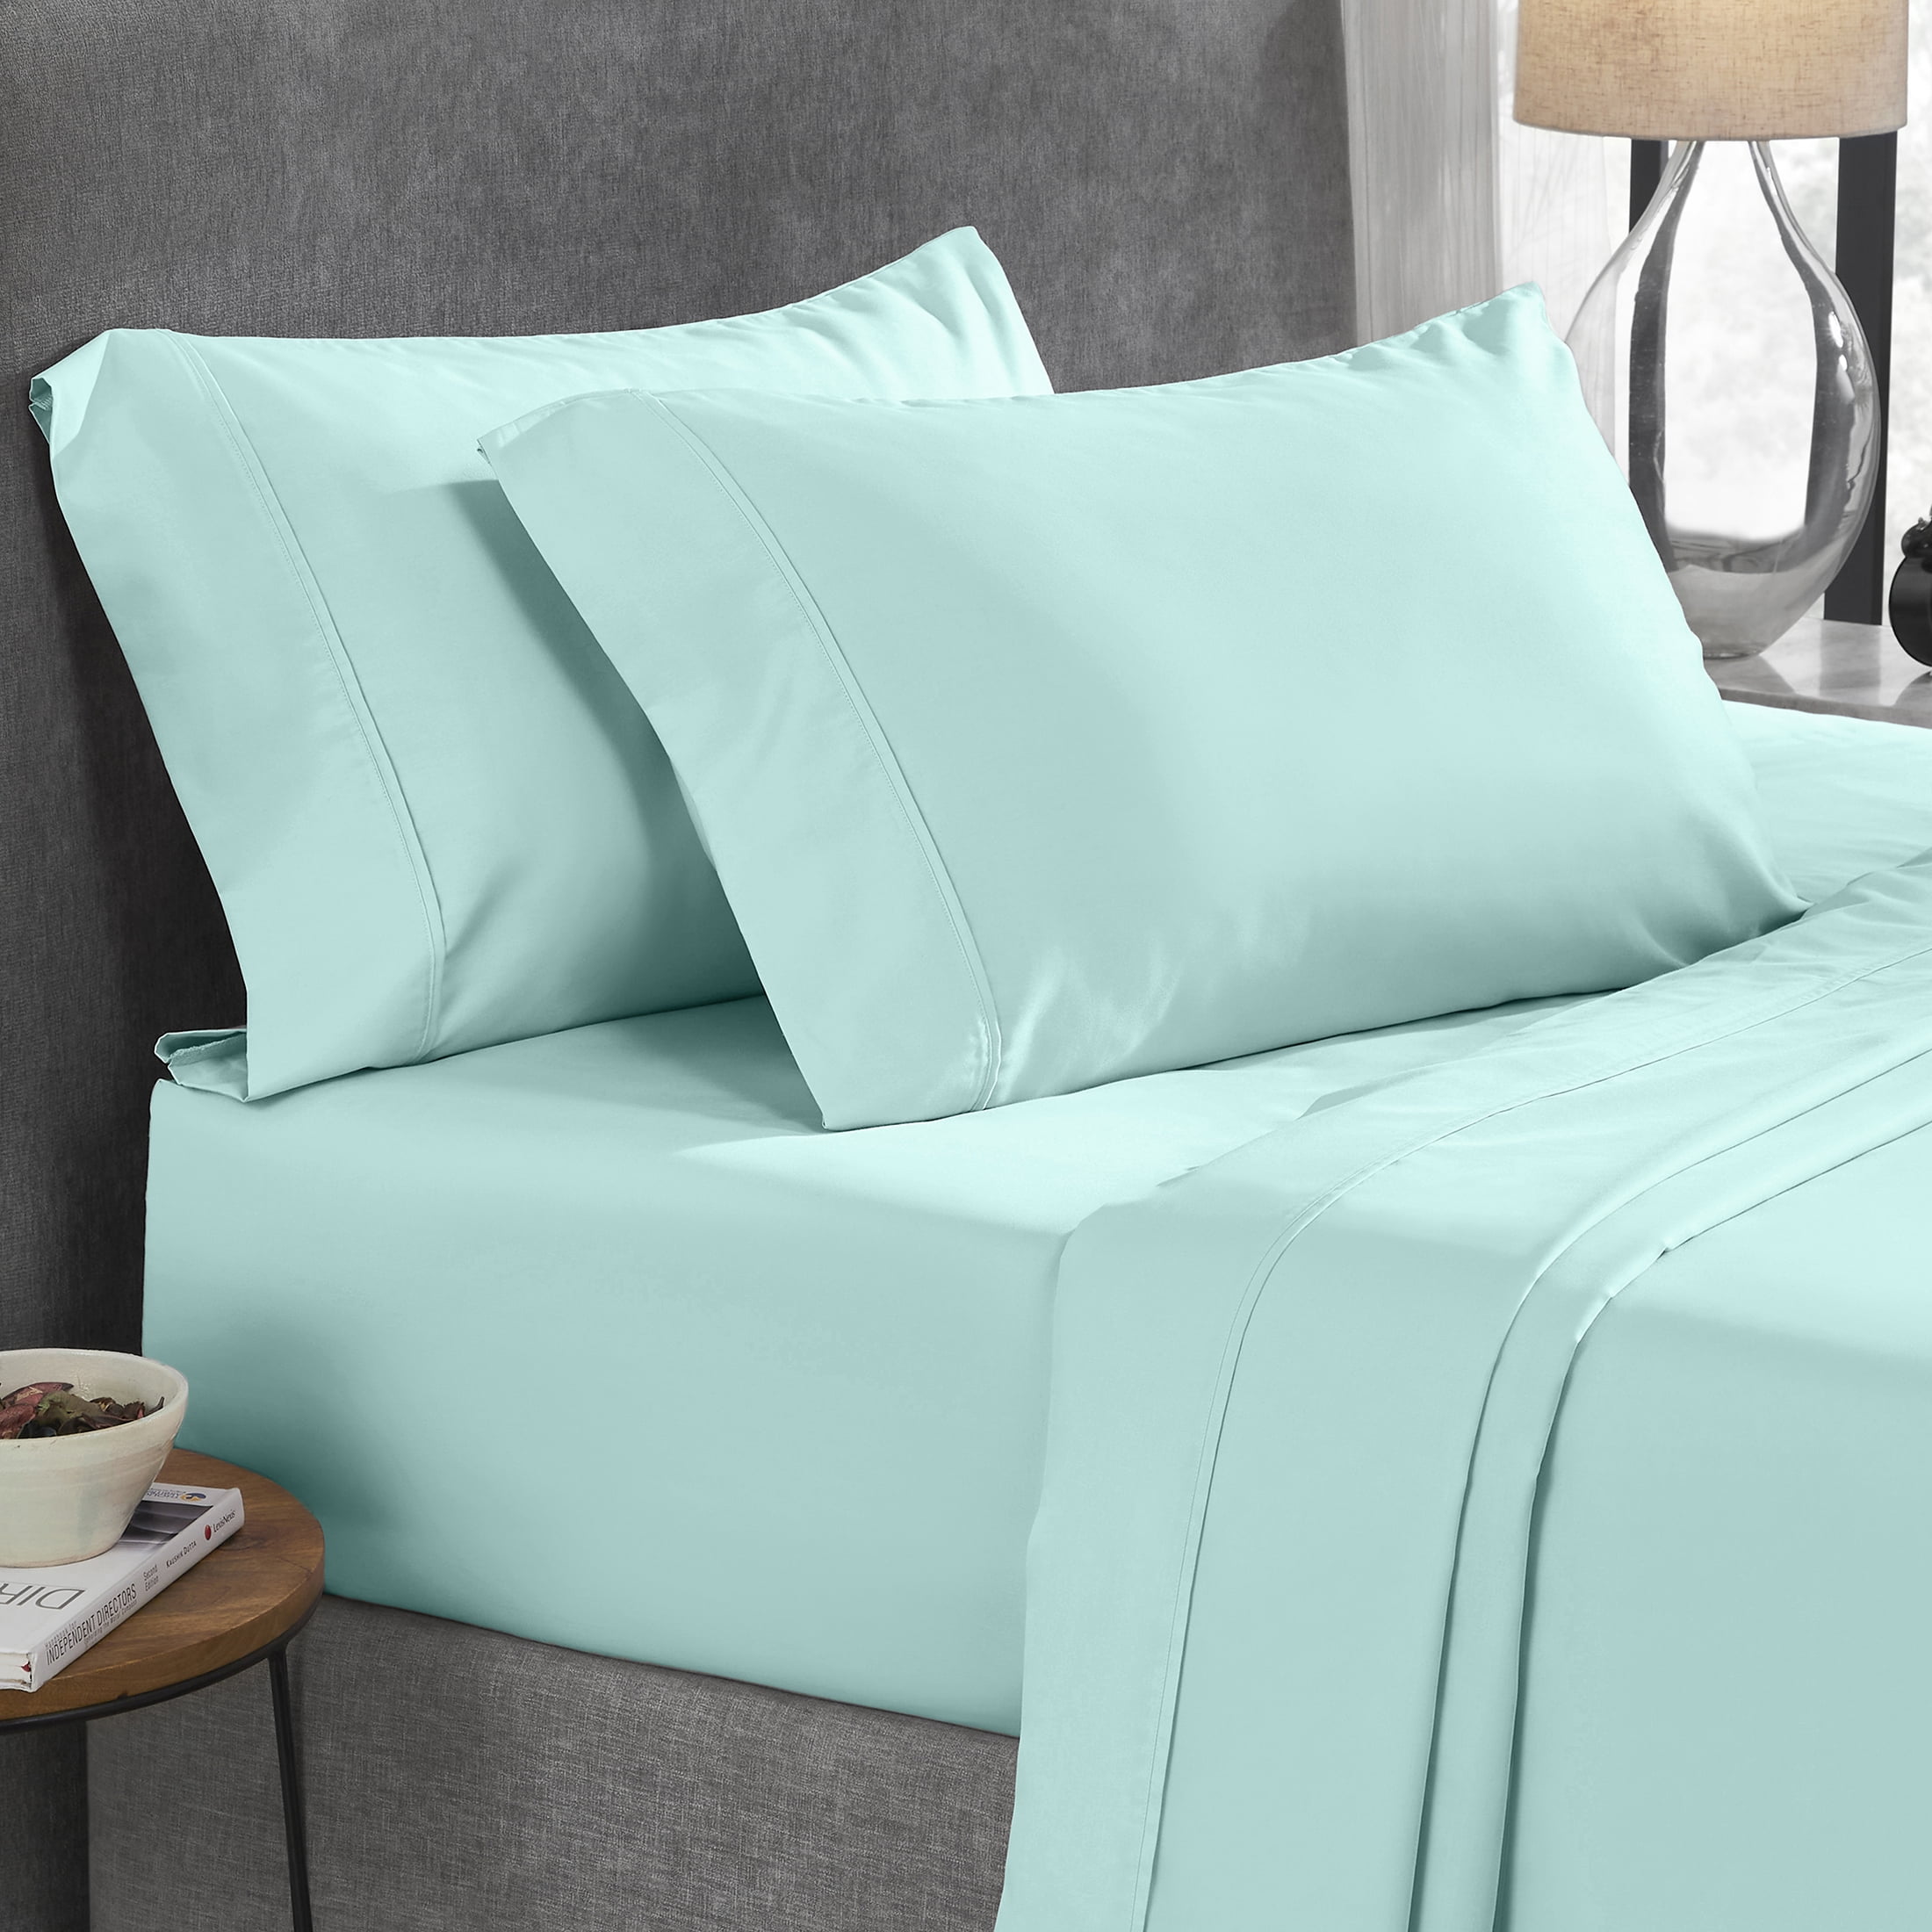 Details about   Split Bed Sheet Set 5 Pcs 600 TC 100% Cotton Extra Deep Pocket Navy Blue Color 